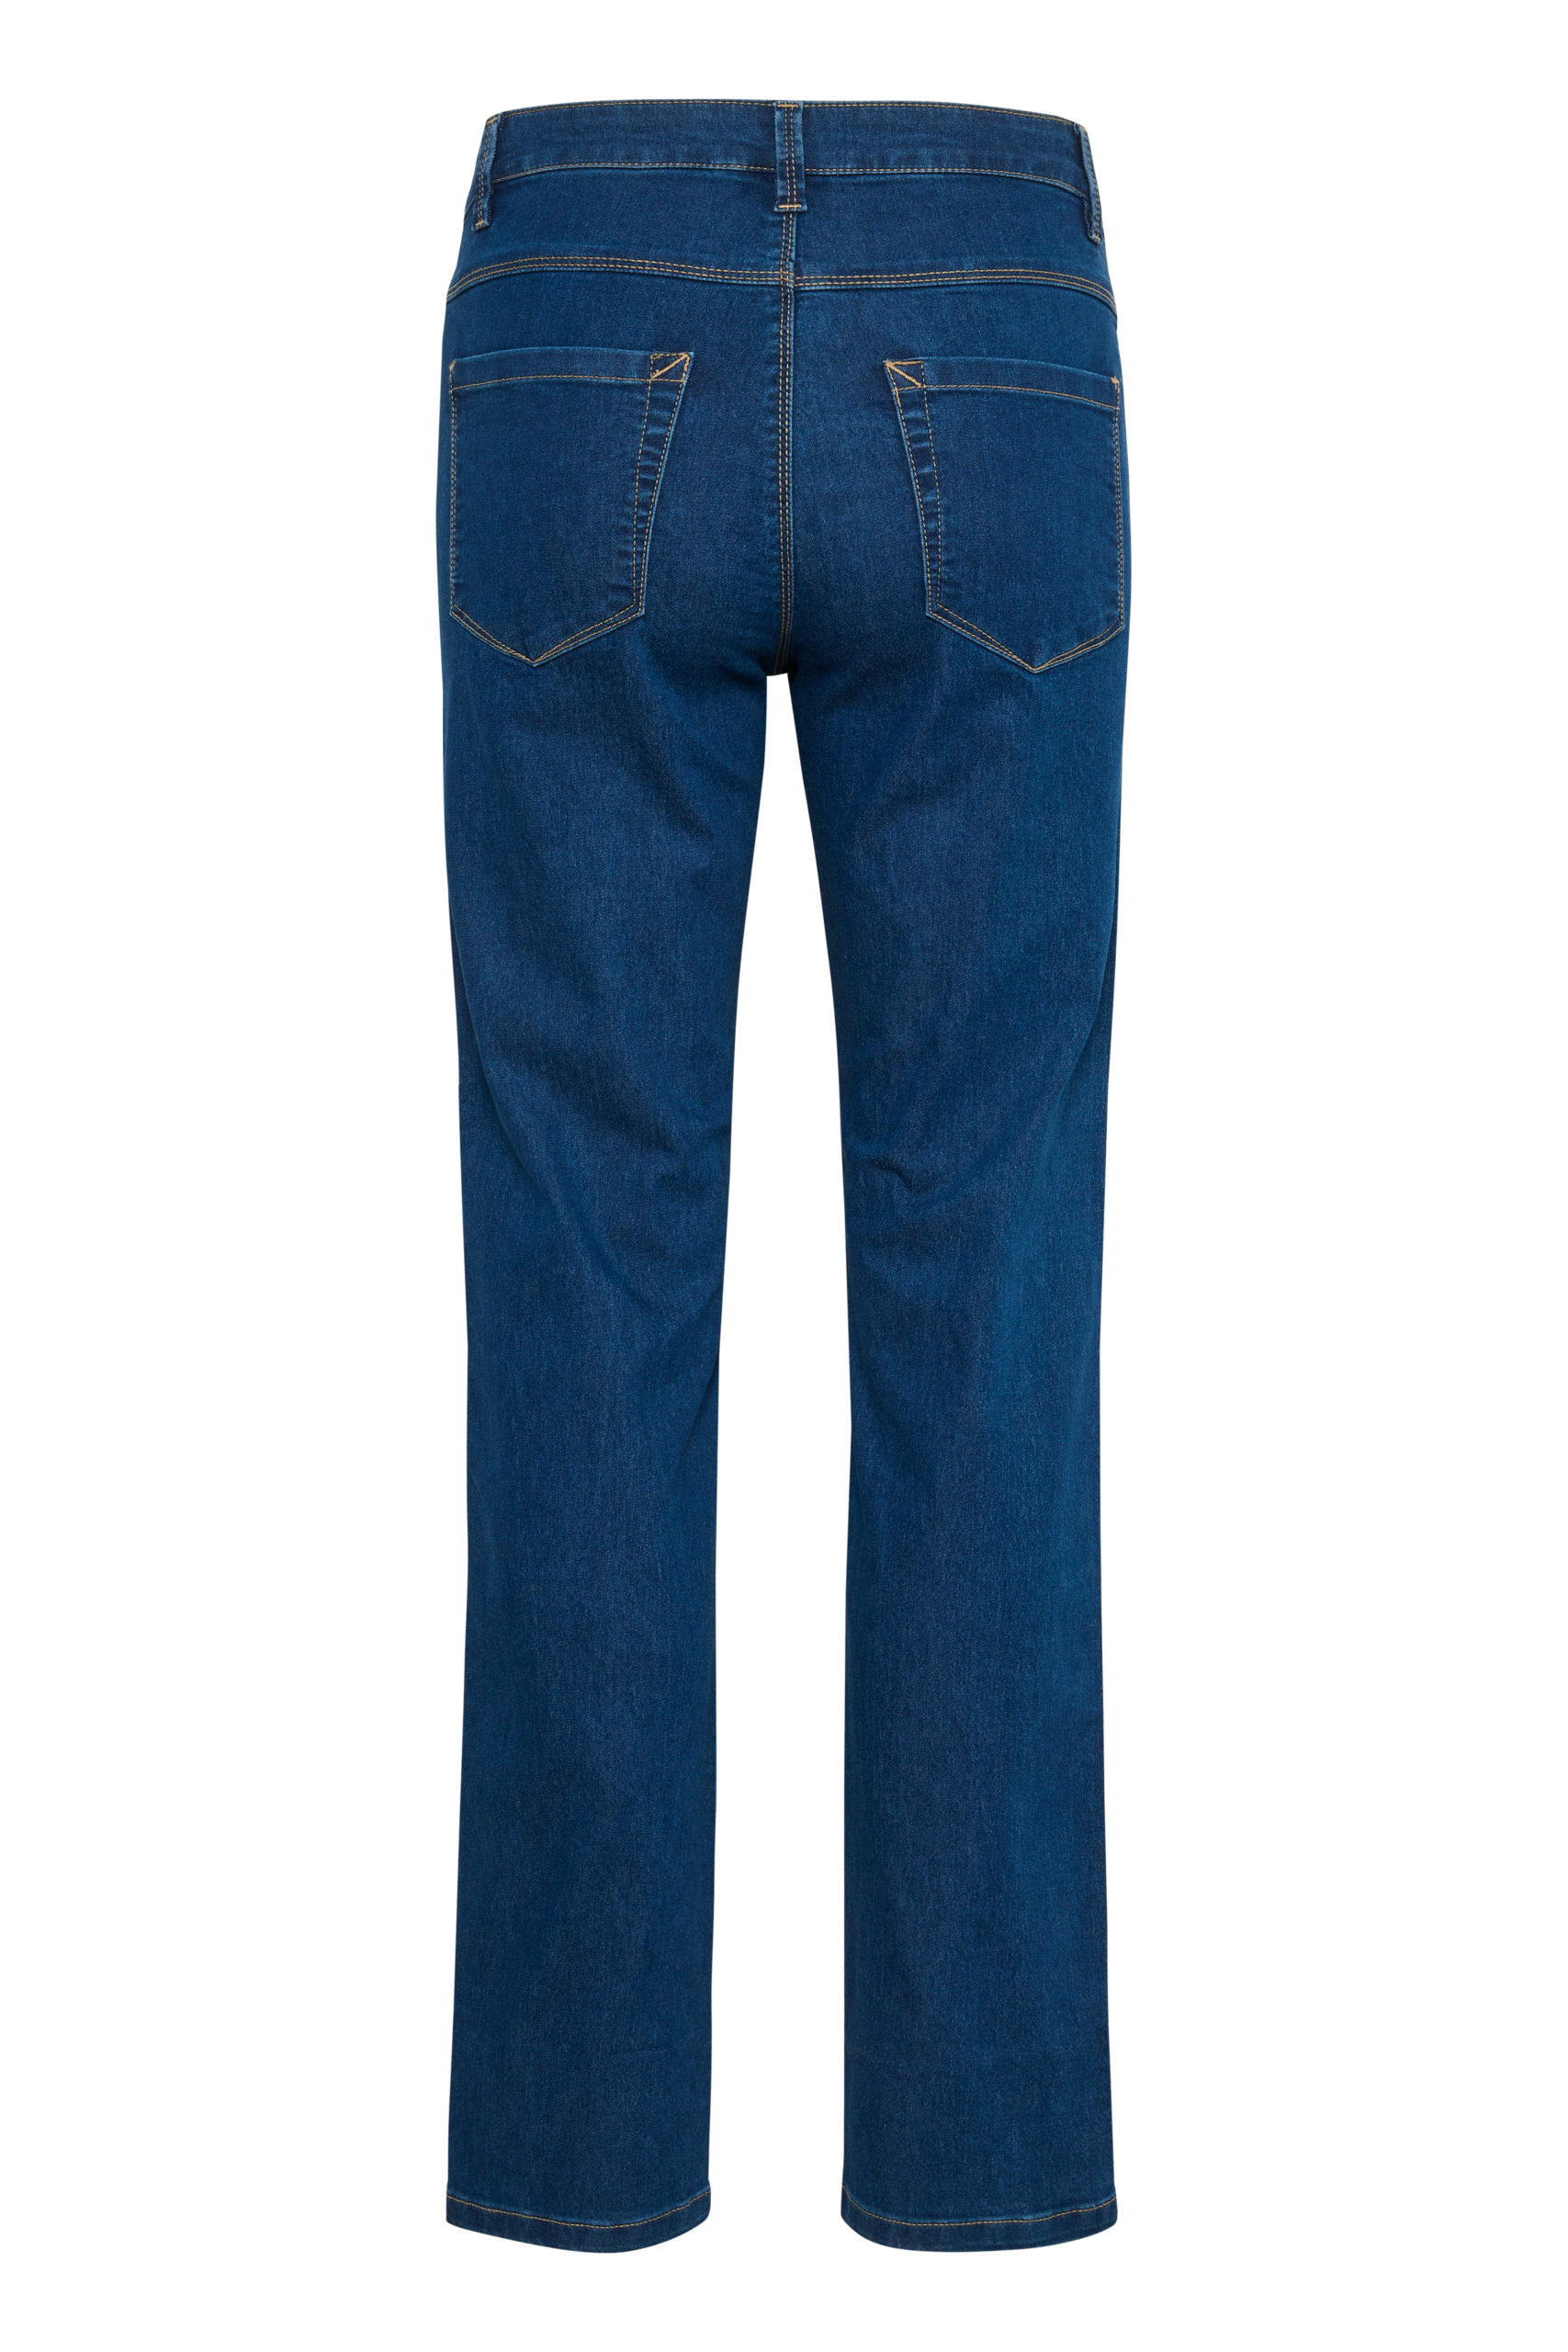 KAvicky Straight Blue Jeans item back